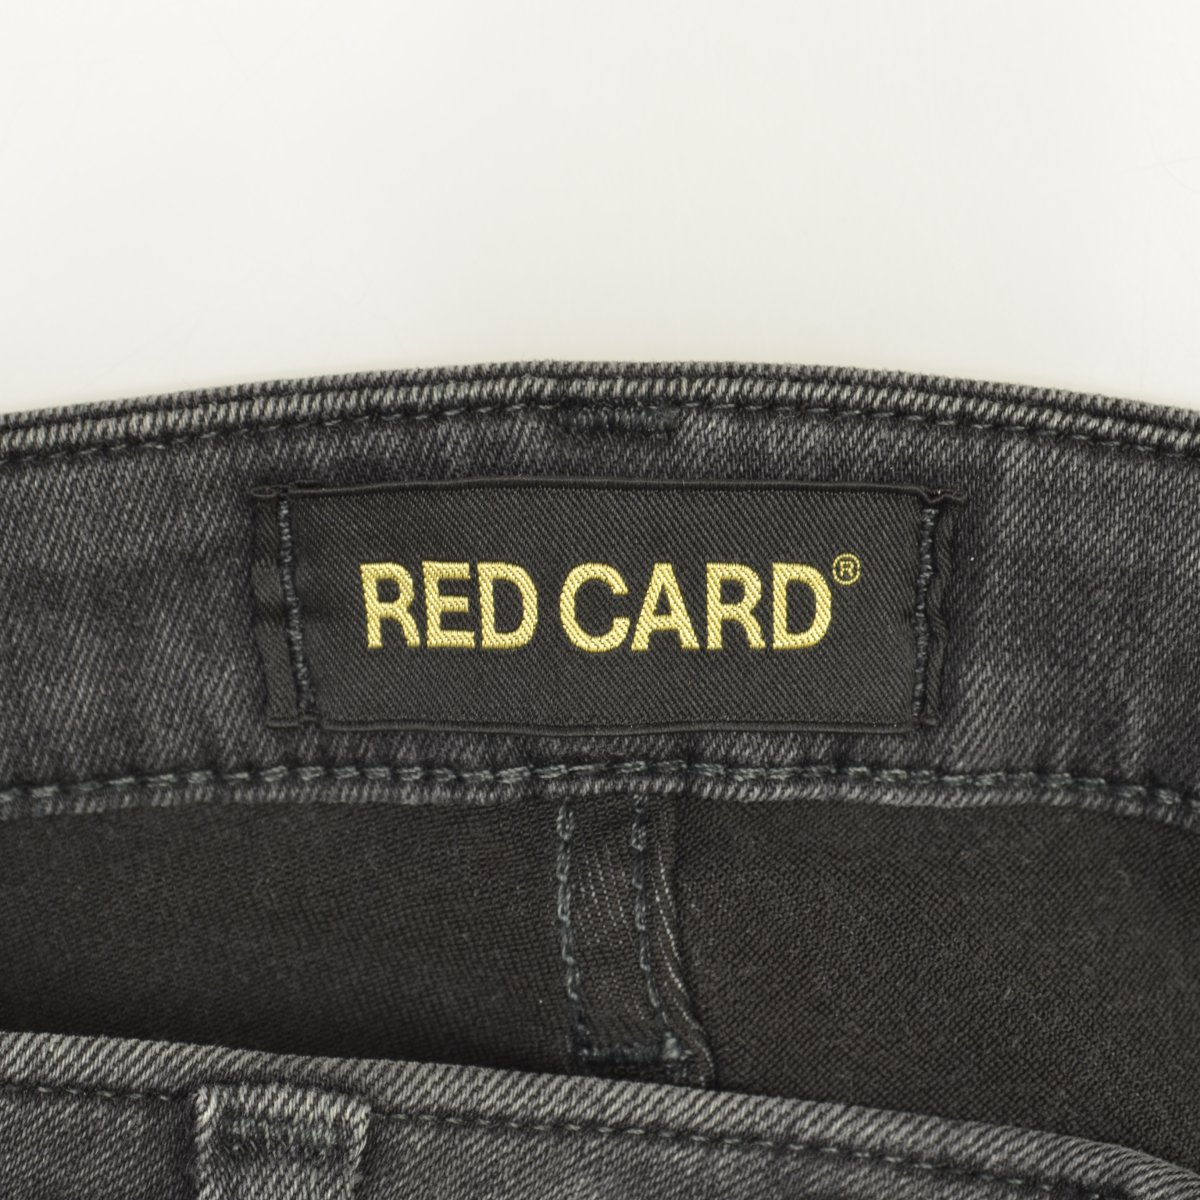 RED CARD / レッドカード66497 Sideway サイドウェイ スーパー スキニーデニムパンツ【caccajcg-l】 |  ブランド古着の買取販売カンフル